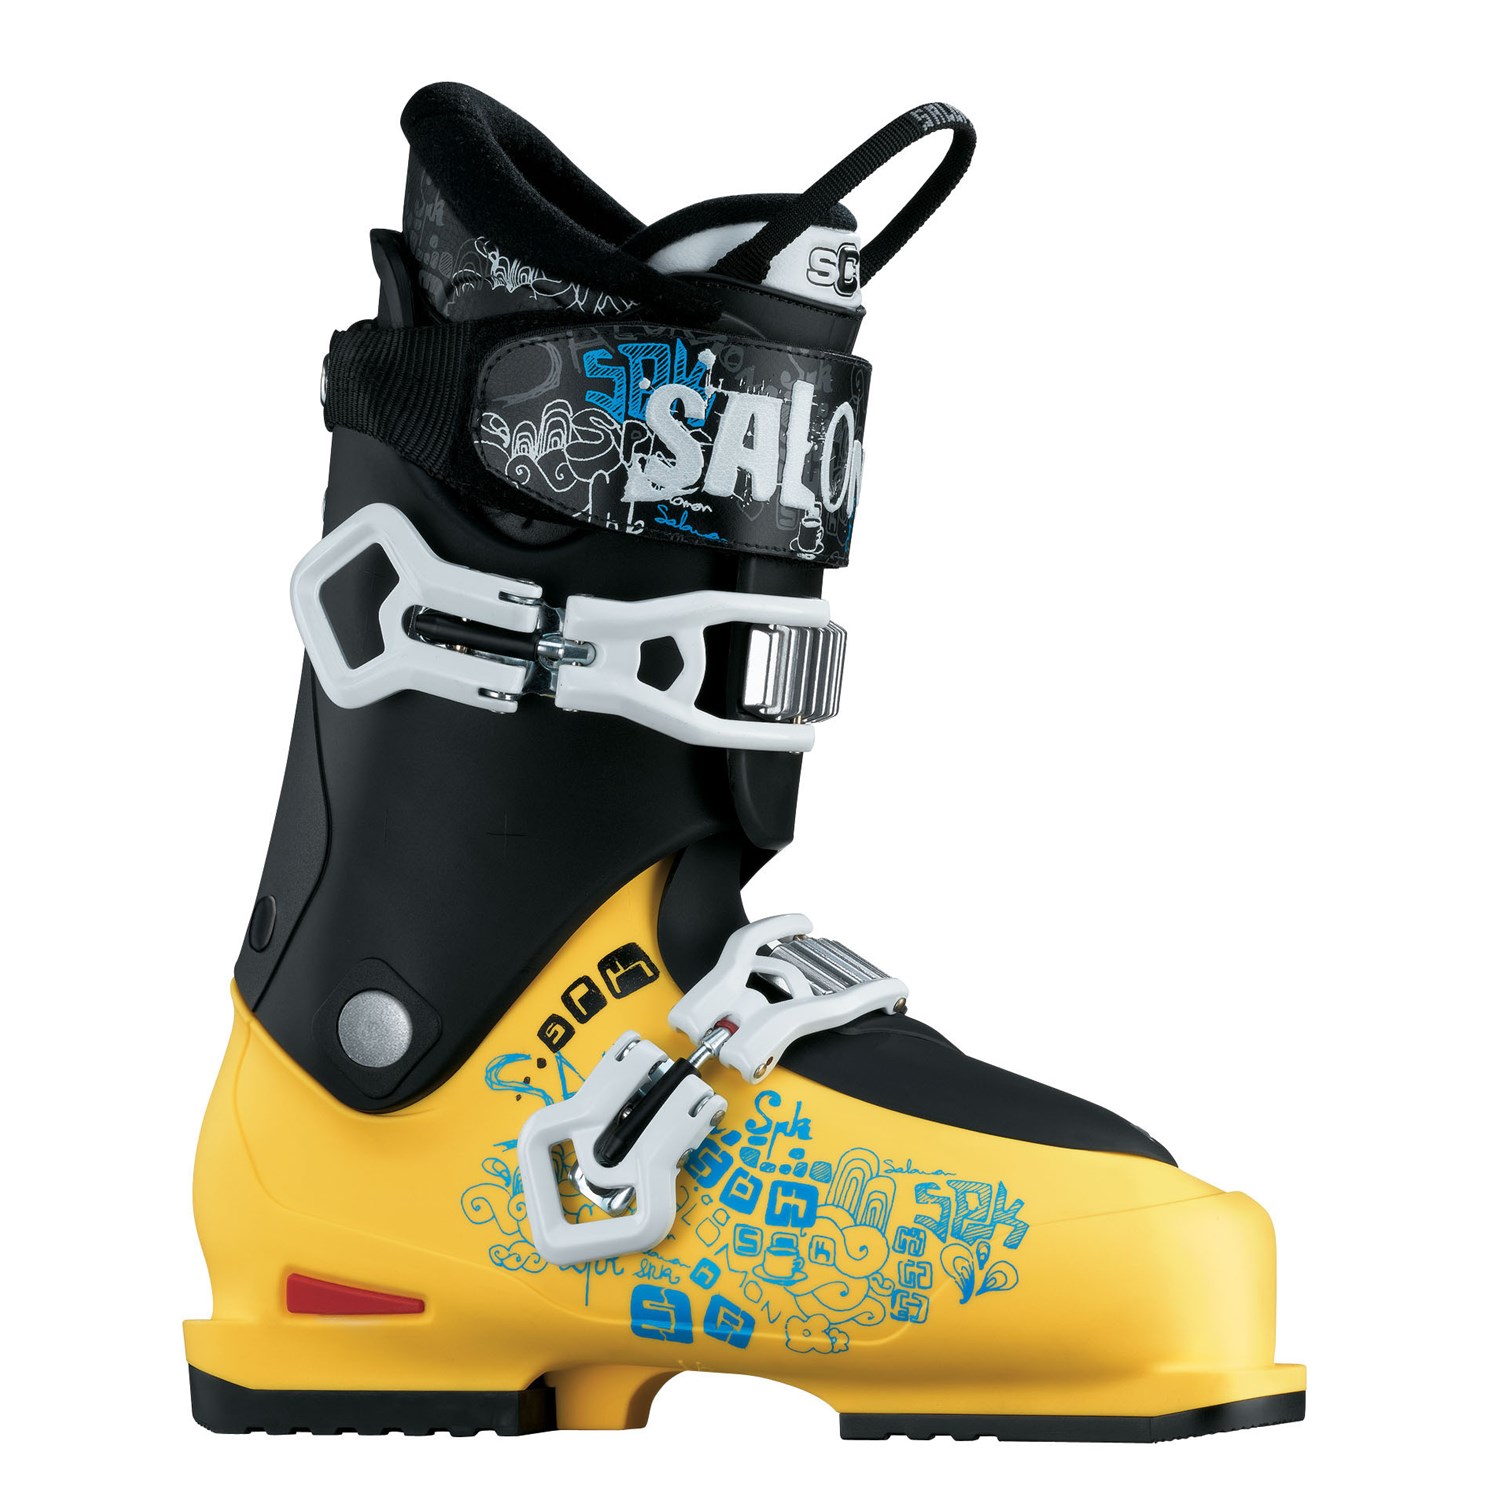 Salomon SPK Kreation Ski Boots 2009 | evo